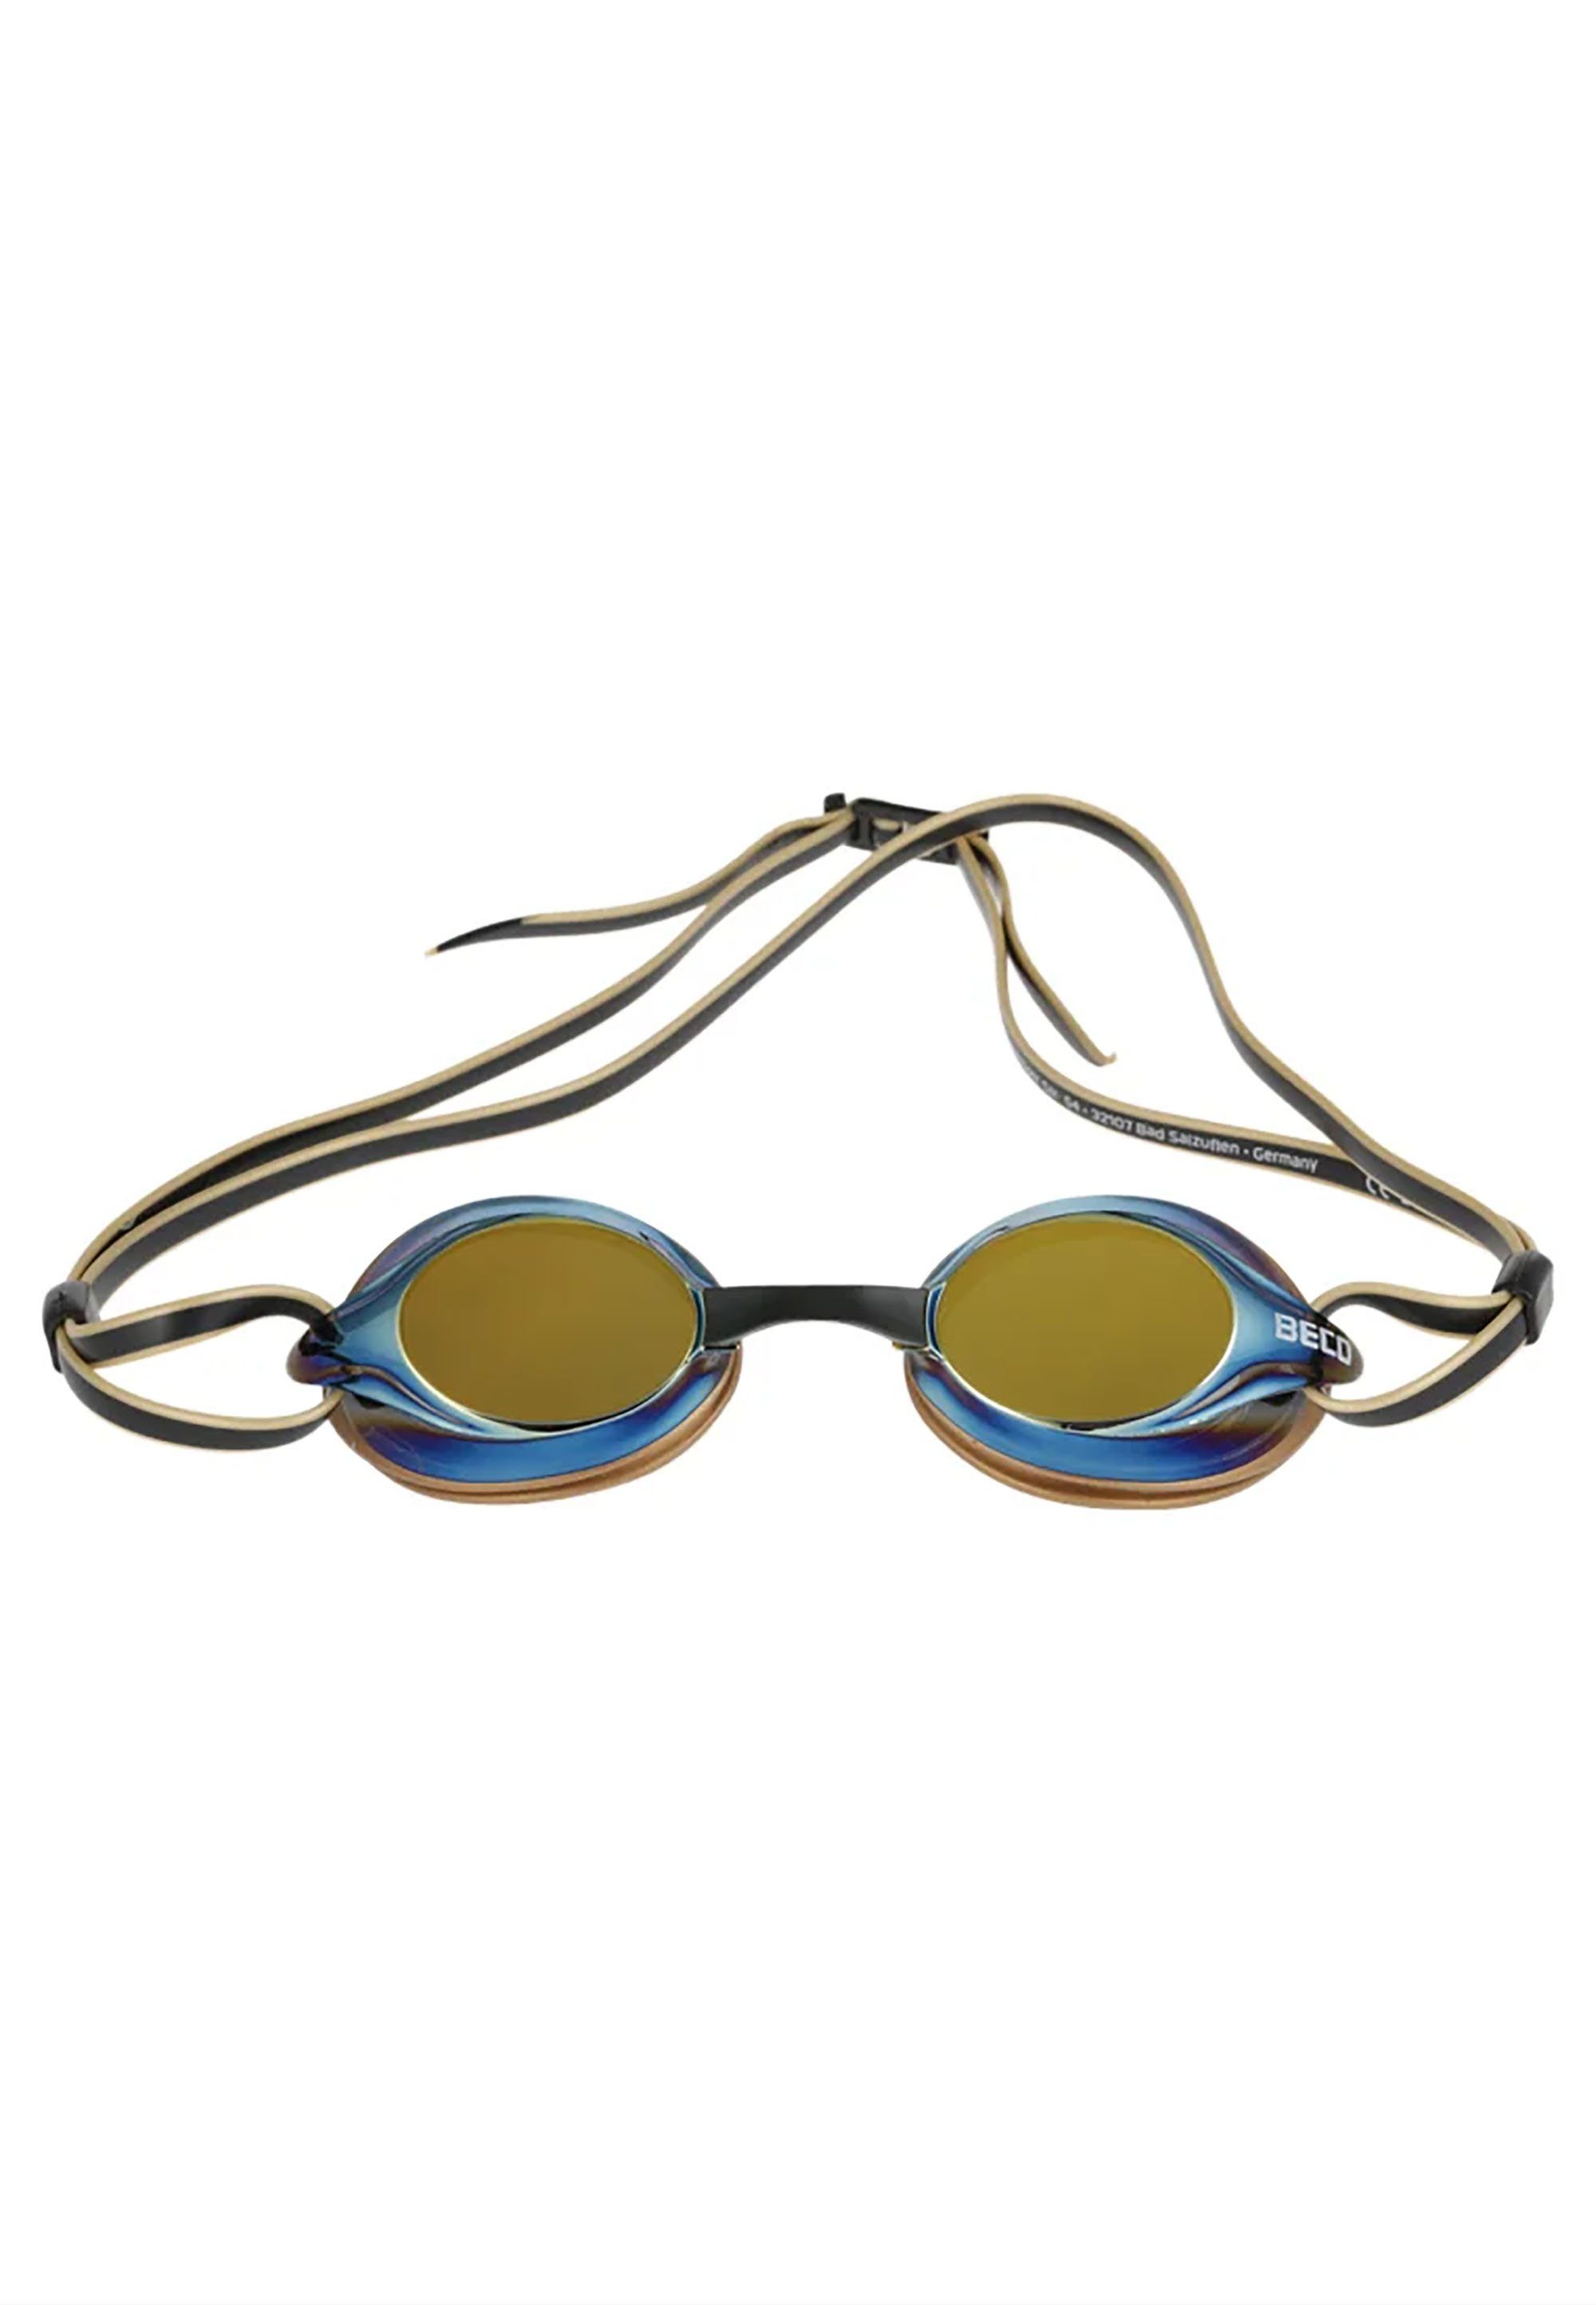 Beco Beermann Taucherbrille BOSTON MIRROR, mit verspiegelten Polycarbonat-Linsen für einen klaren Blick